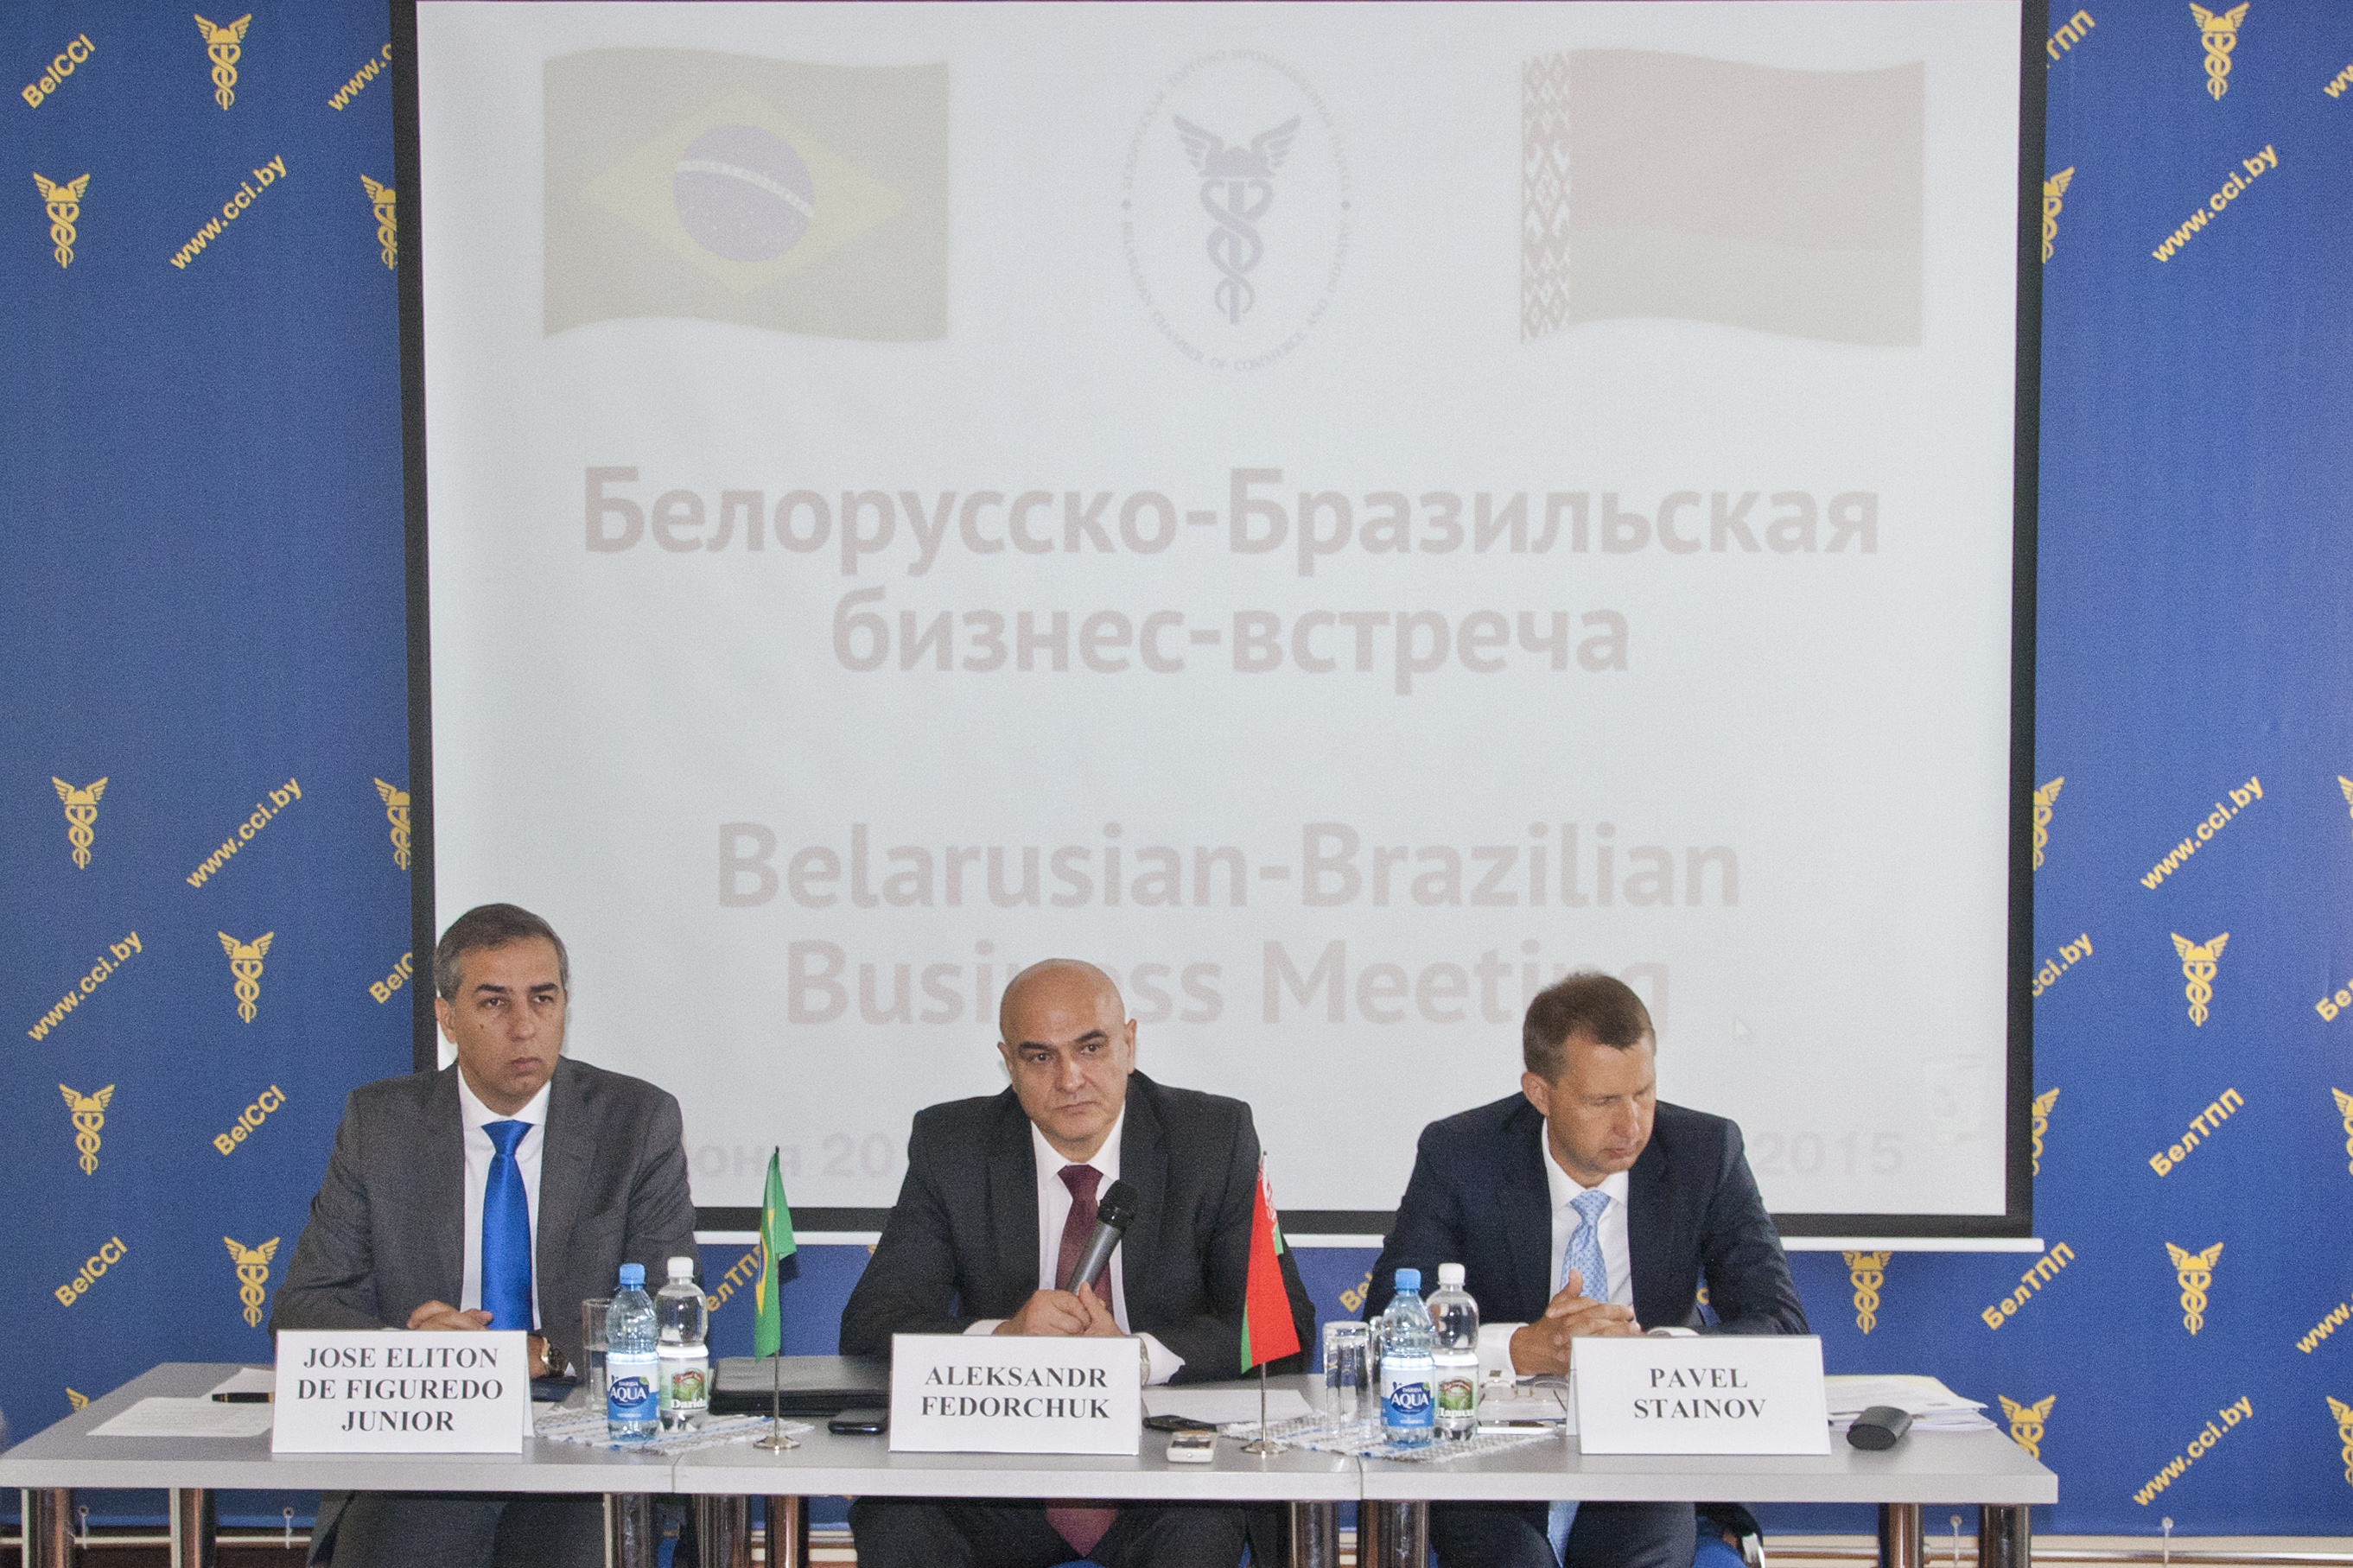 Белорусско-Бразильская бизнес-встреча